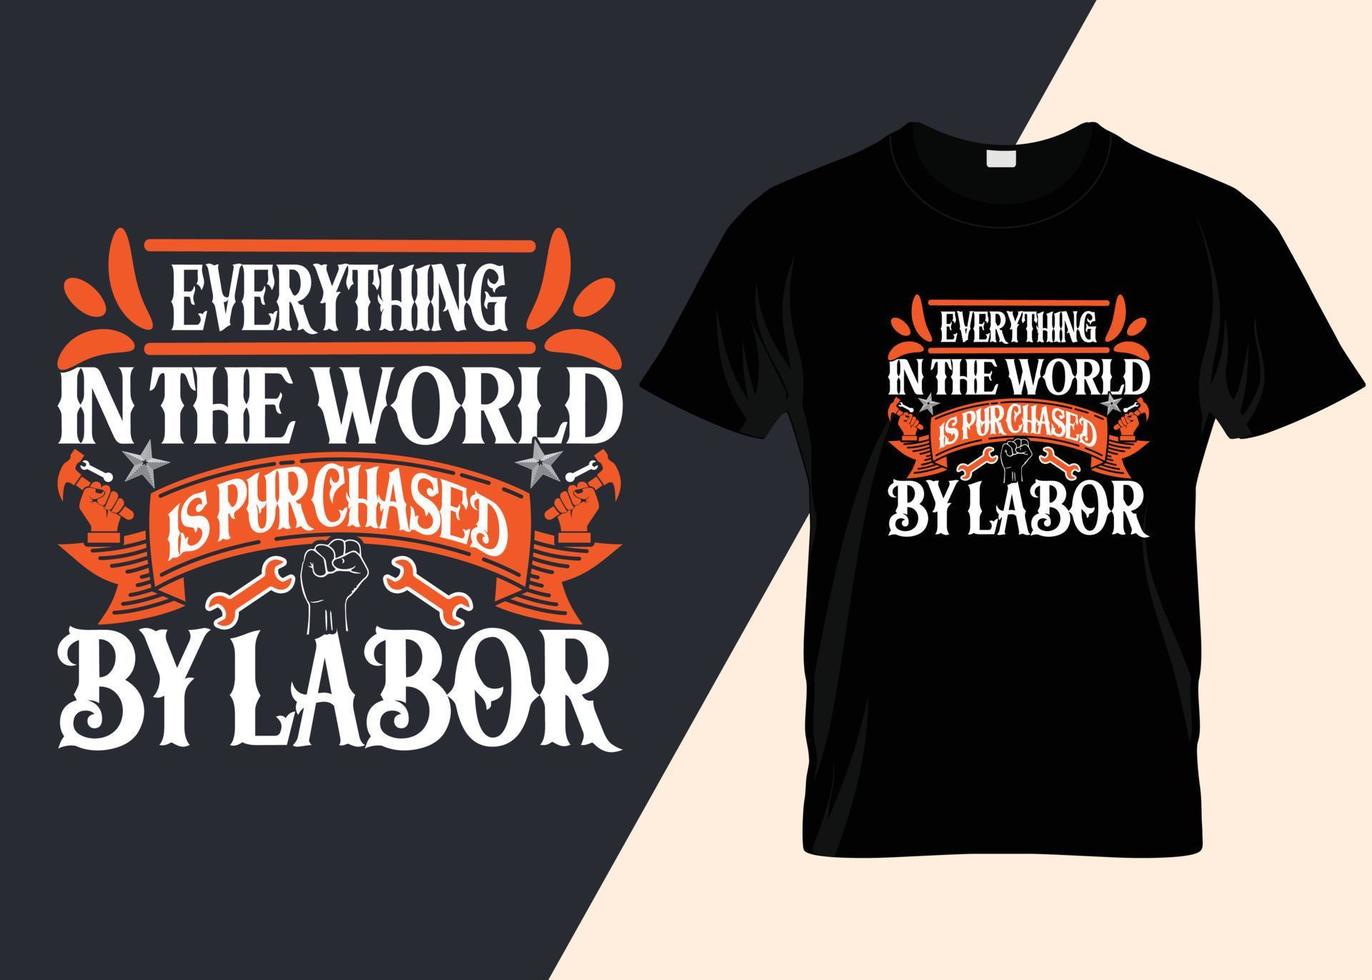 tout dans le monde est acheté par la conception de t-shirts de typographie du travail vecteur